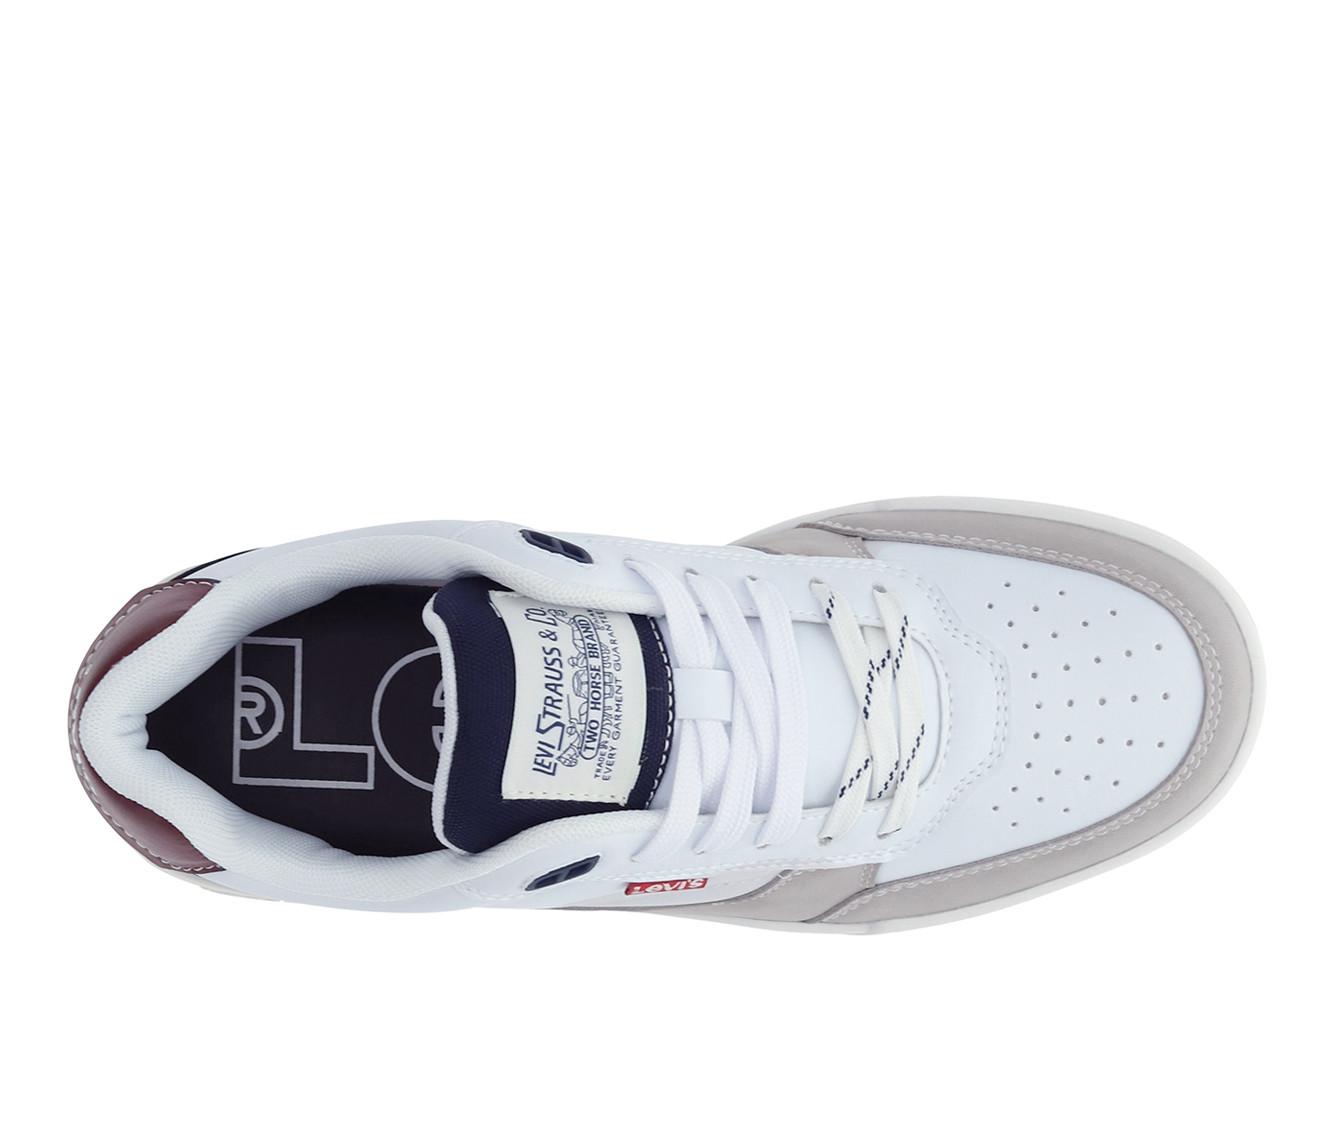 Men's Levis La Jolla Sneakers